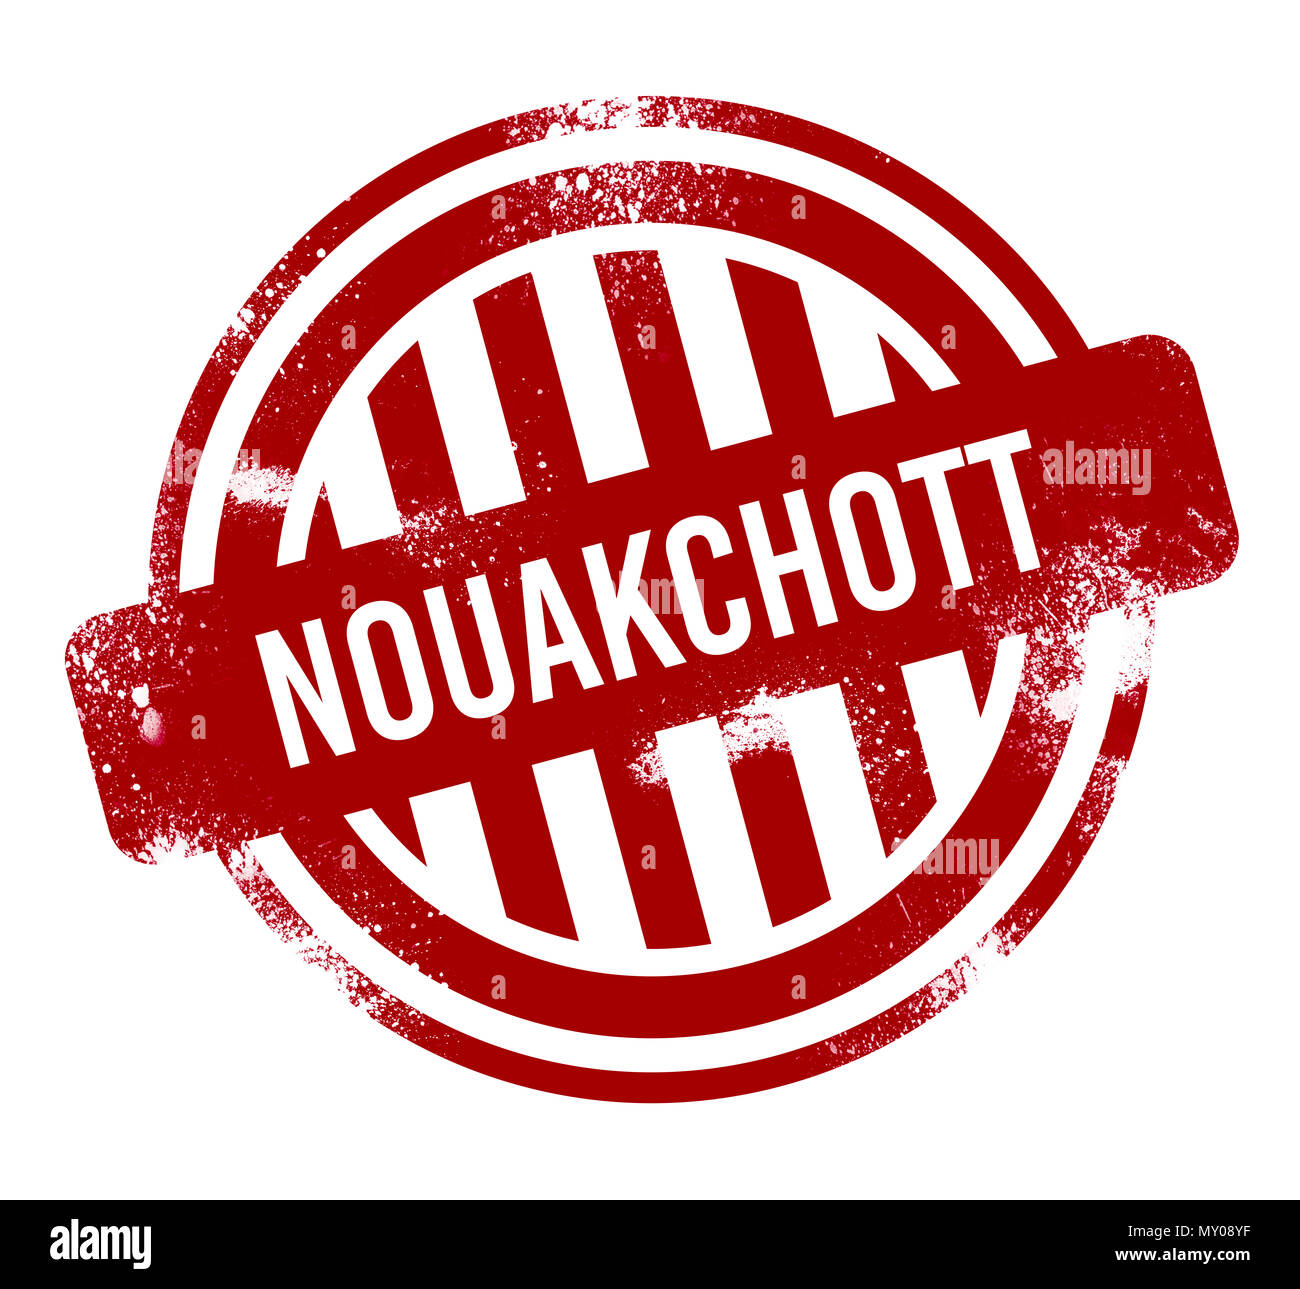 Nouakchott - Red grunge button, stamp Stock Photo